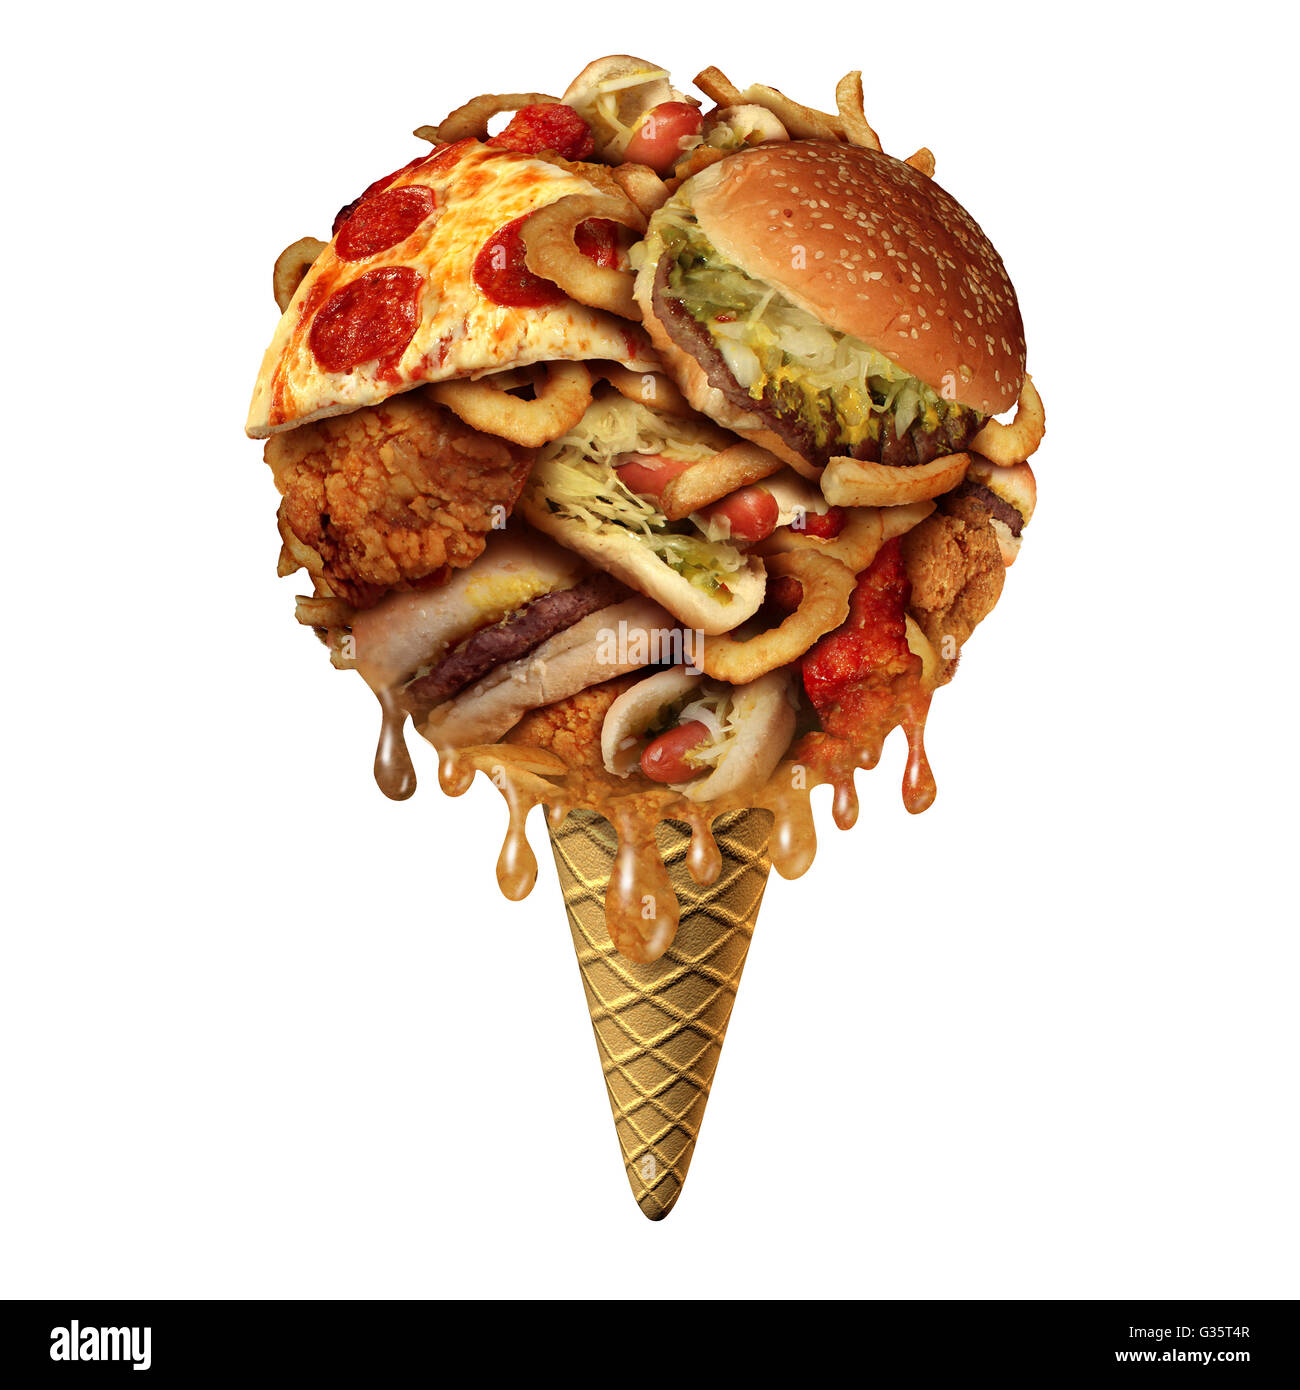 Estate junk food concept come insalubre considera come gli snack fritti conformata come un gelato su un cono come una salute e fitness, metafora per cattive abitudini alimentari durante i mesi caldi con 3D'illustrazione degli elementi. Foto Stock